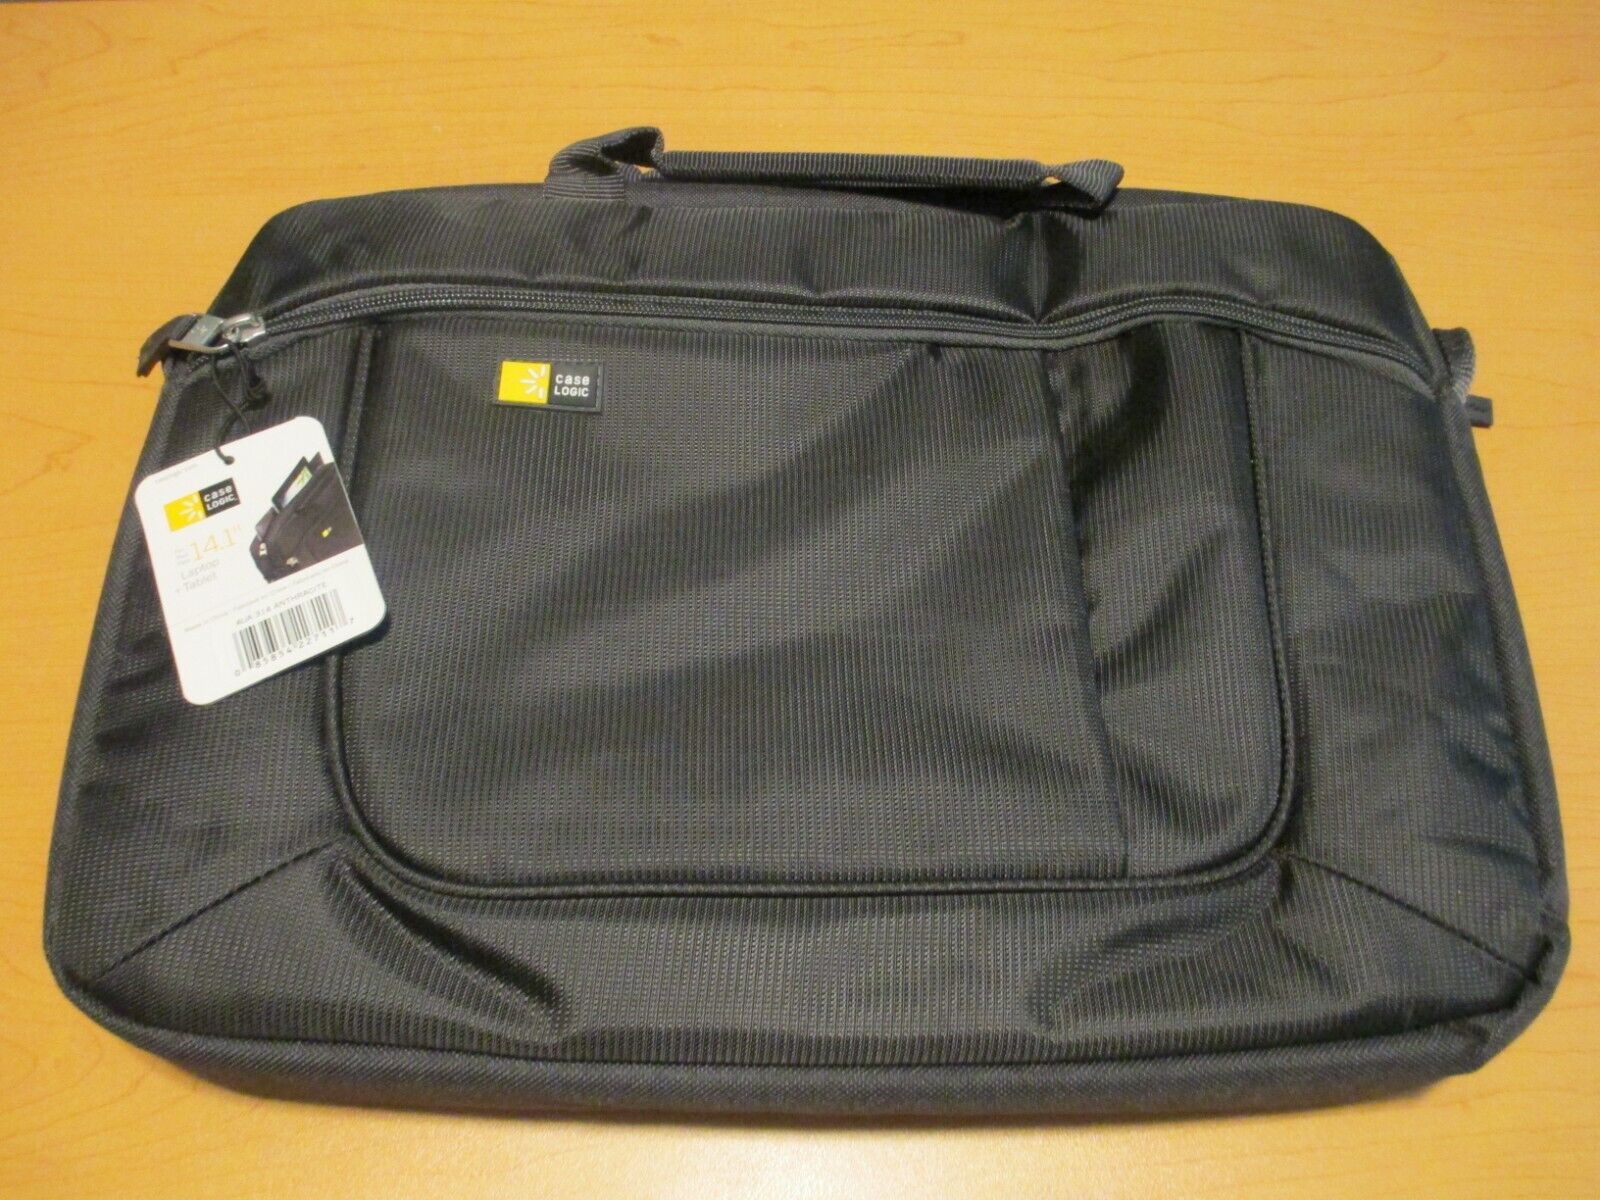 New 14.1 Case Logic Laptop/Tablet Bag